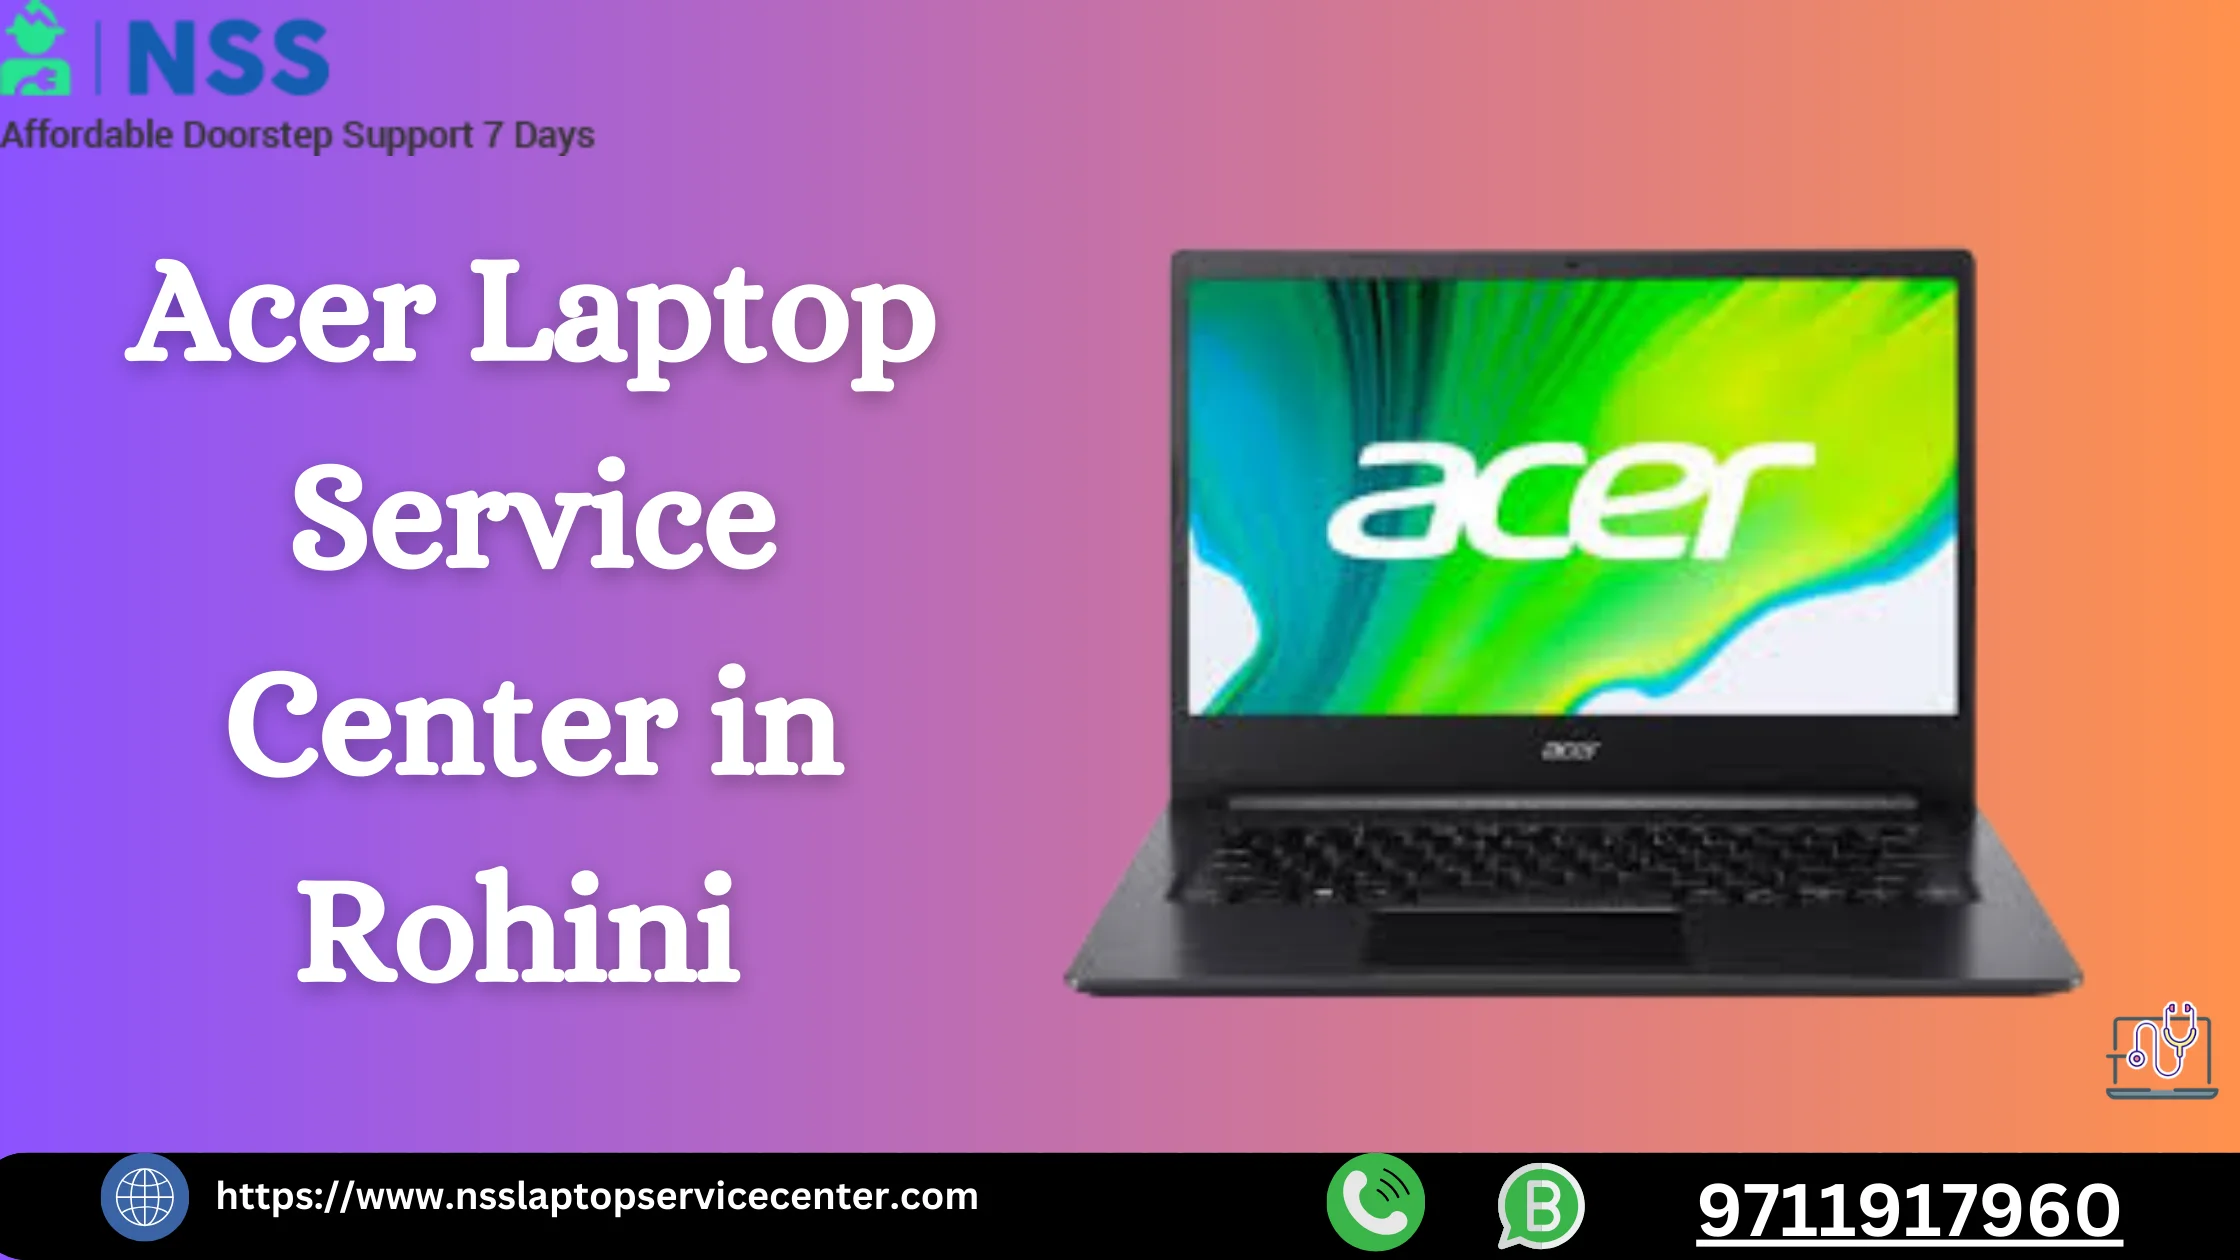 Acer Laptop Service Center in Rohini Near Delhi